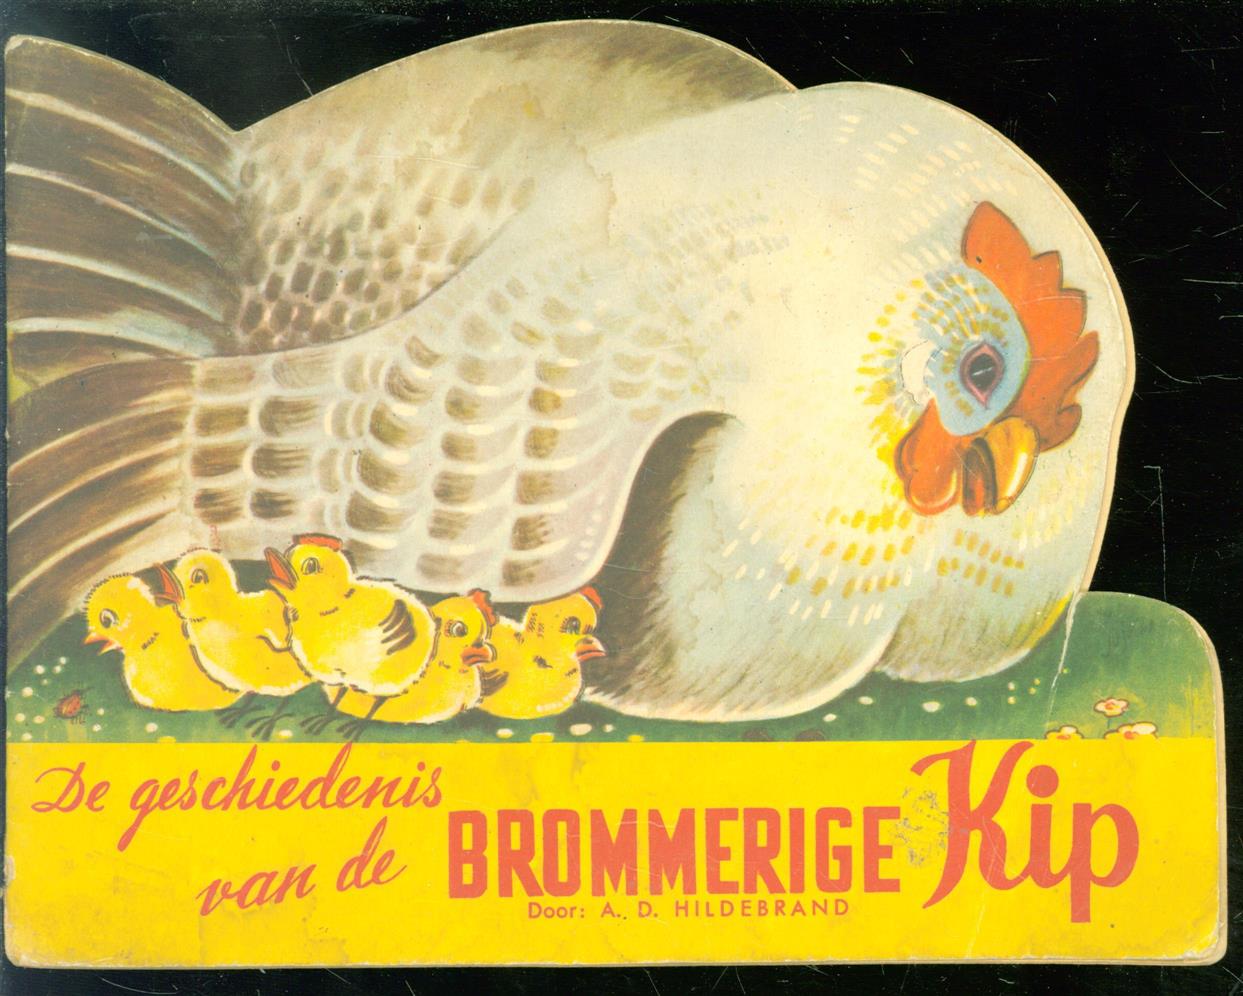 HILDEBRAND, A.D. - De geschiedenis van de brommerige kip